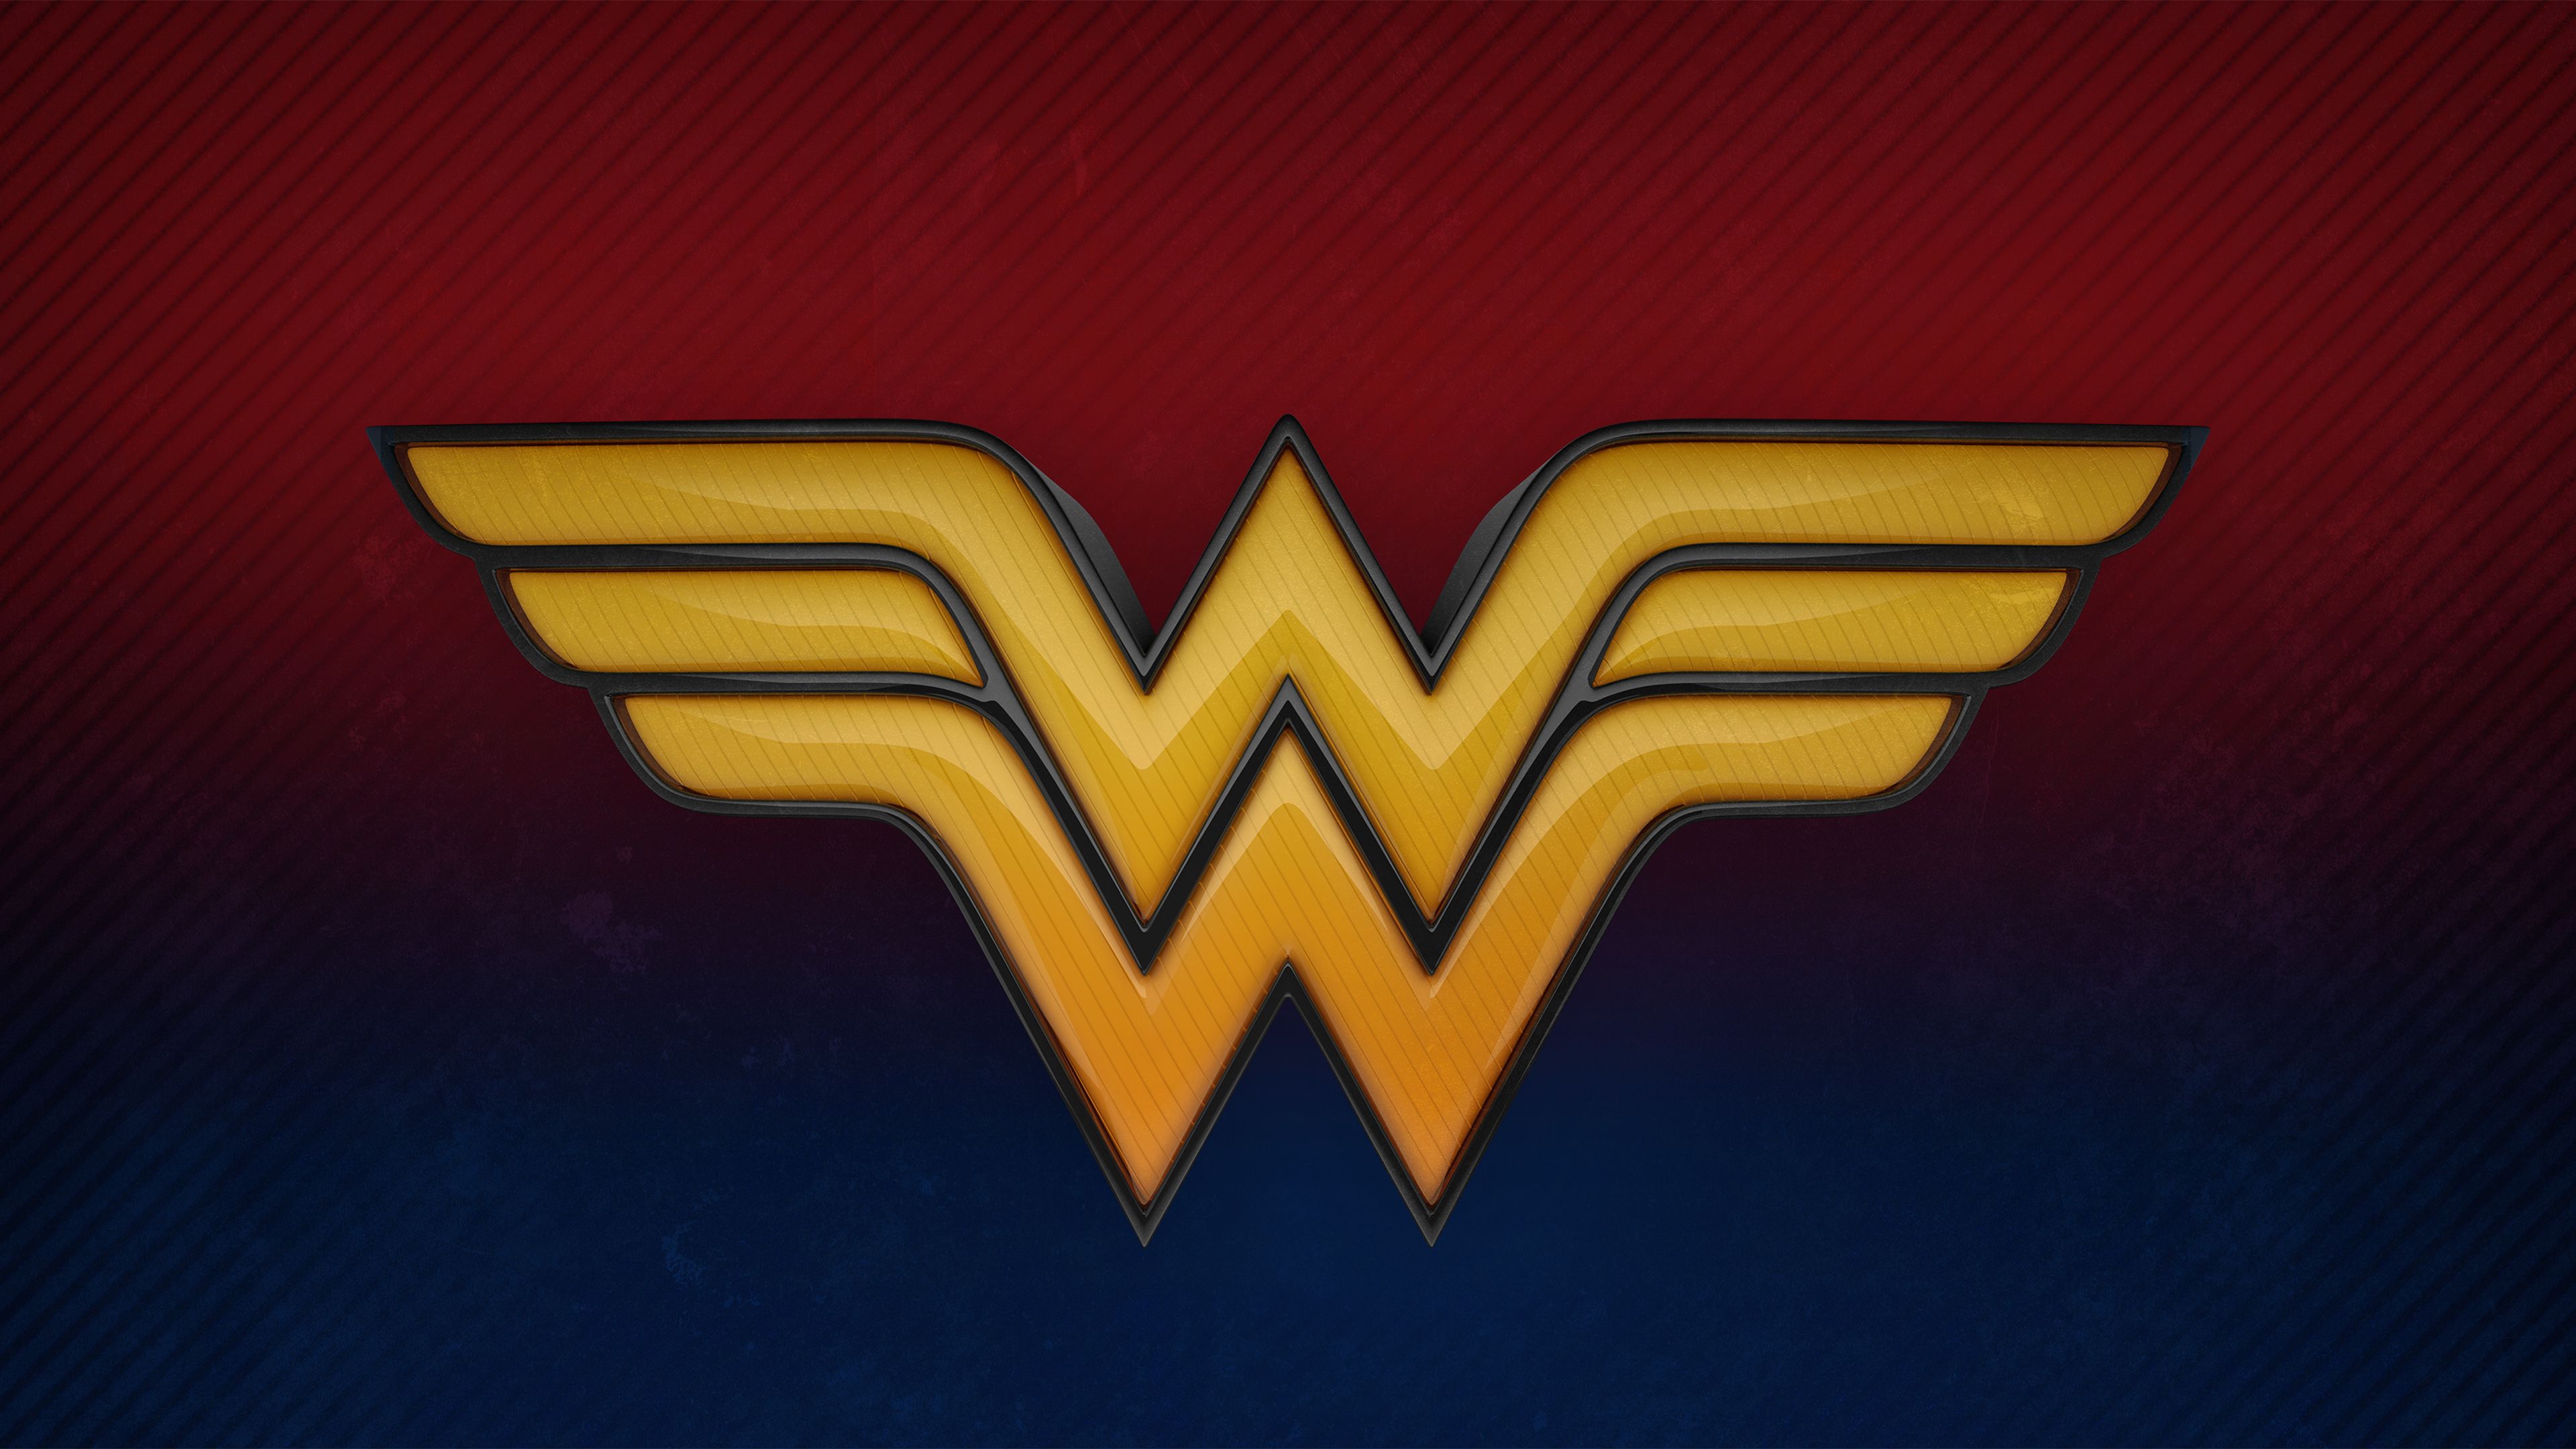 Wonder Woman 3D Logo 4k Wonder Woman Wallpaper, Superheroes Wallpaper, Logo Wallpaper, Hd Wallpaper, 4k Wallpapd Logo, 3D Wallpaper Superhero, Wonder Woman